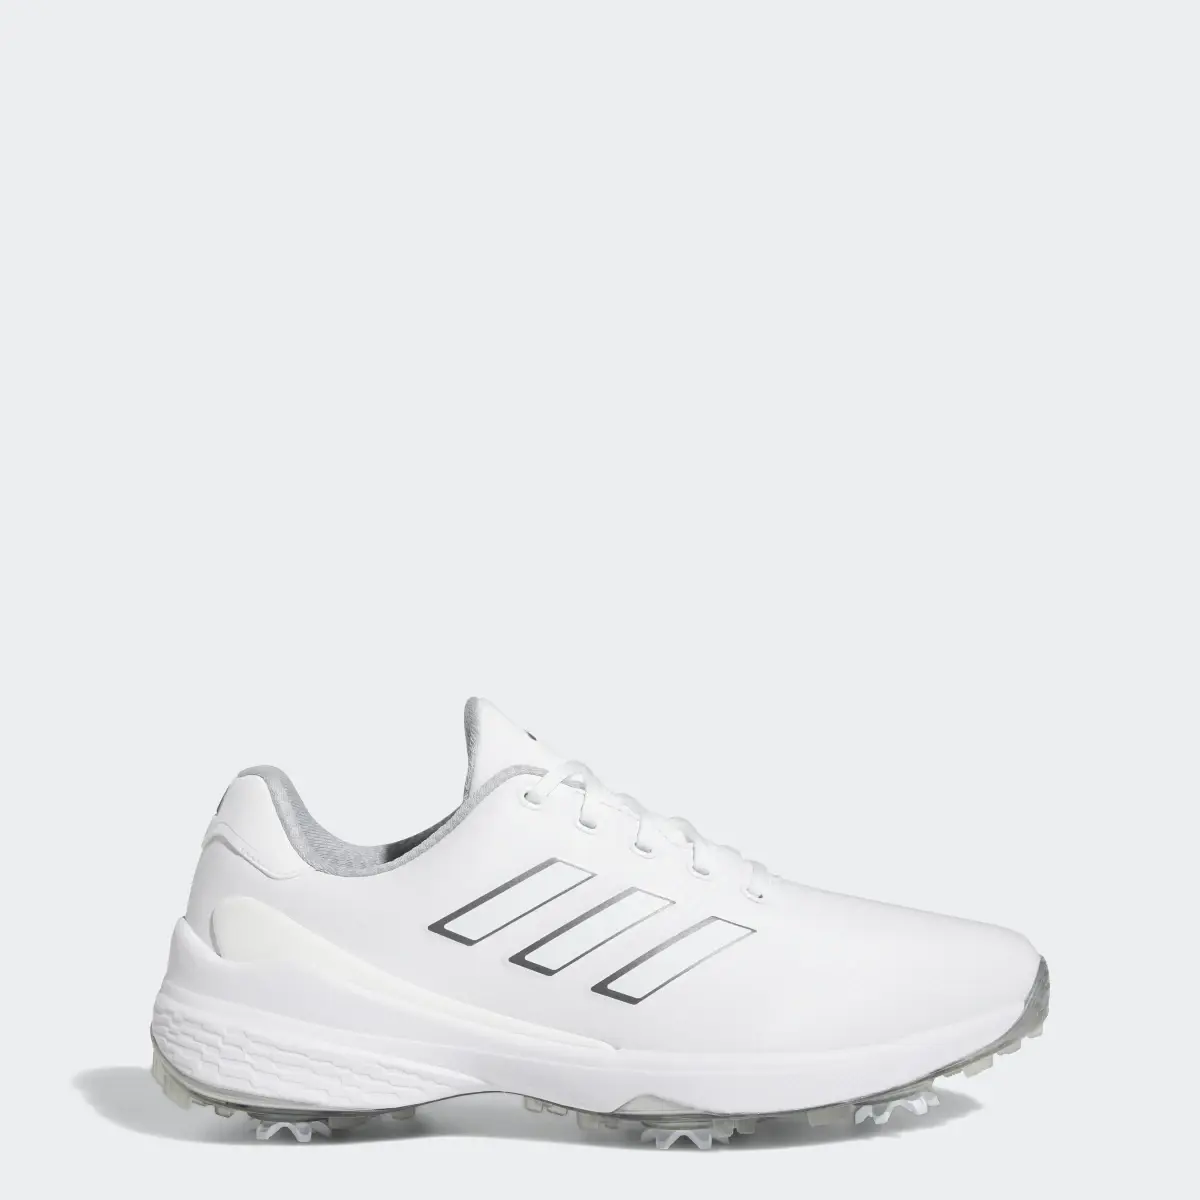 Adidas ZG23 Golf Shoes. 1